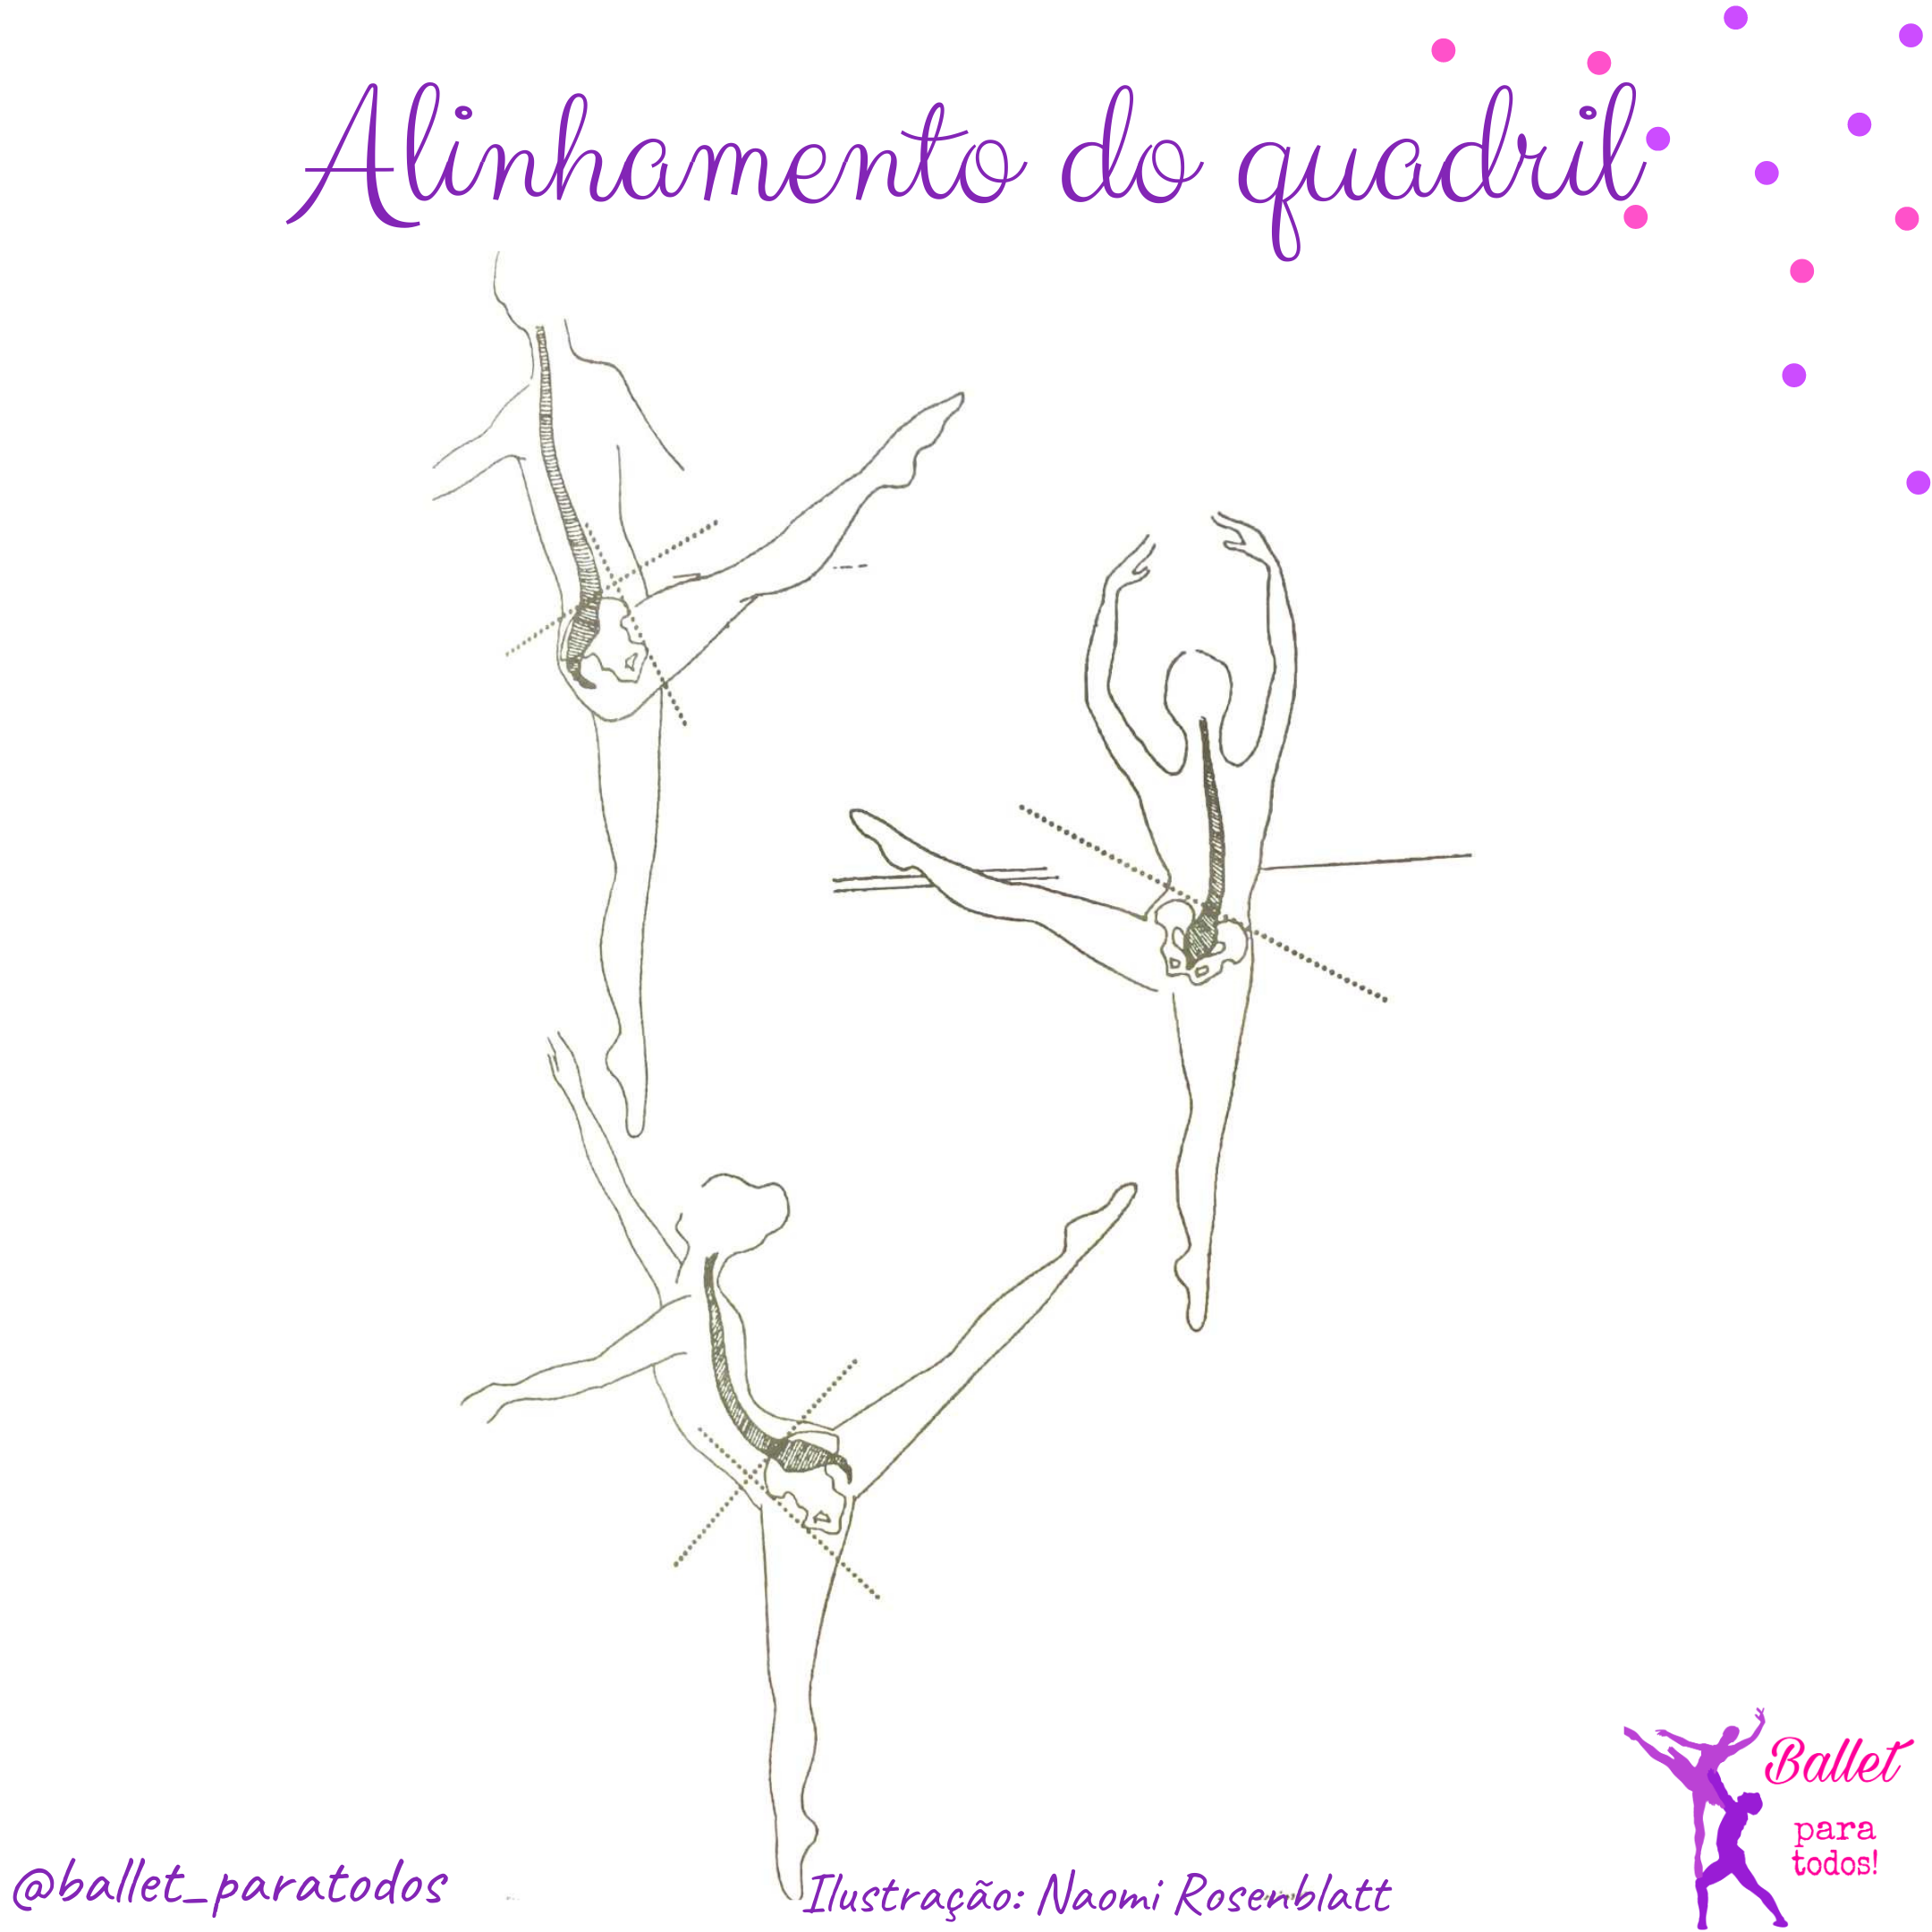 Mundo Bailarinístico - Blog de Ballet: Métodos Ballet - Cecchetti